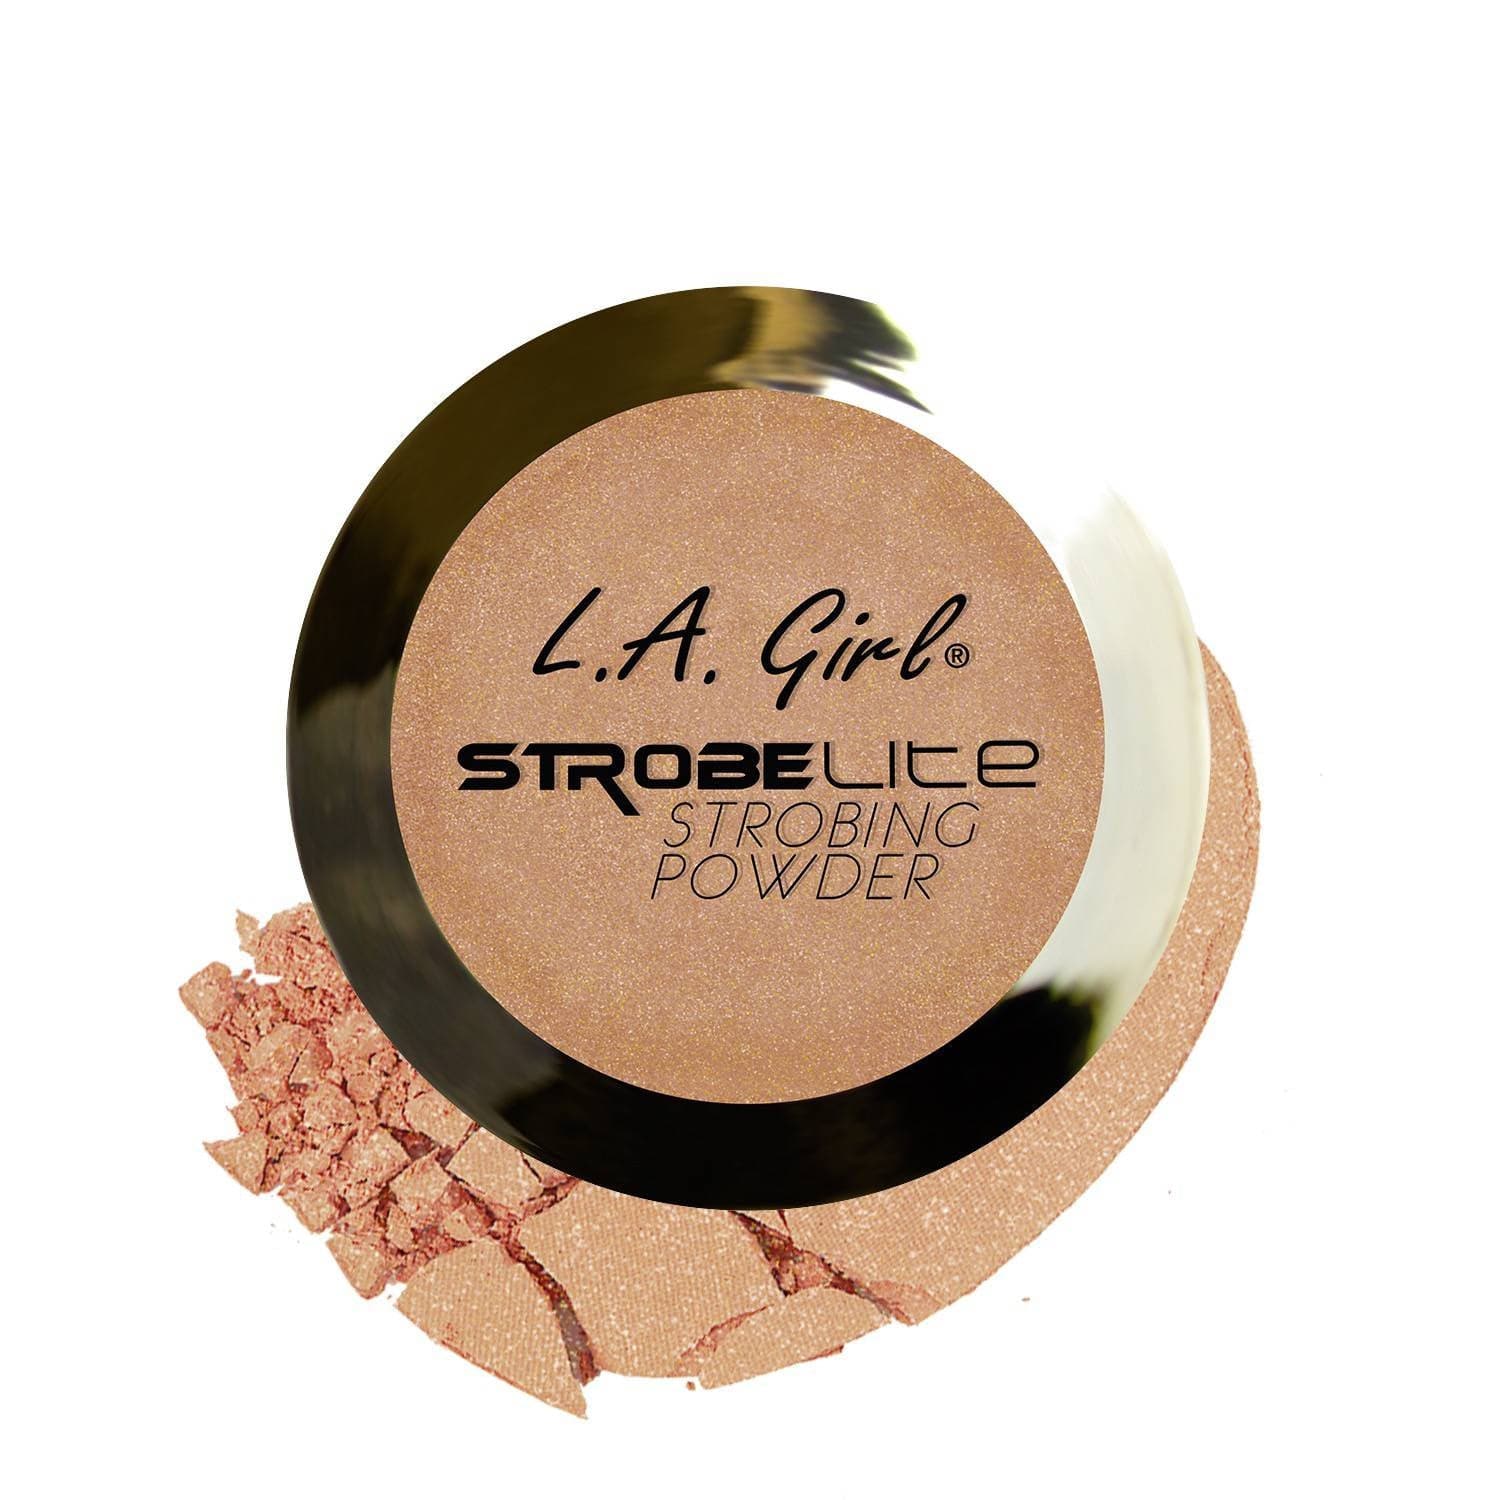 L.A.Girl - Strobe Lite Strobbing Powder